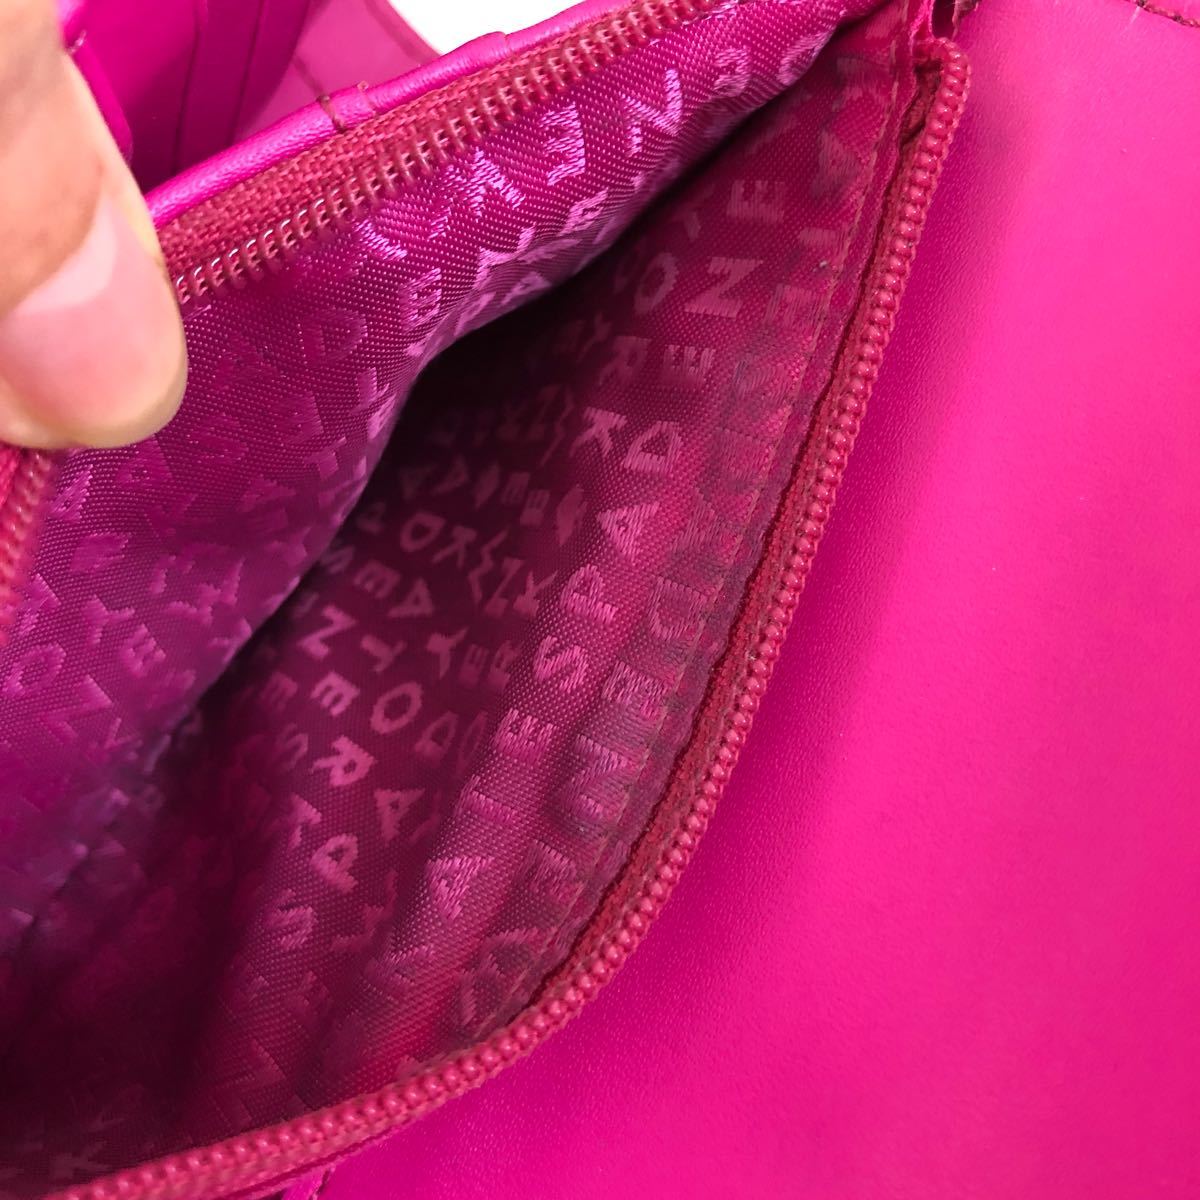 ケイトスペード 三つ折財布 ピンク リボン 汚れありのため格安出品です